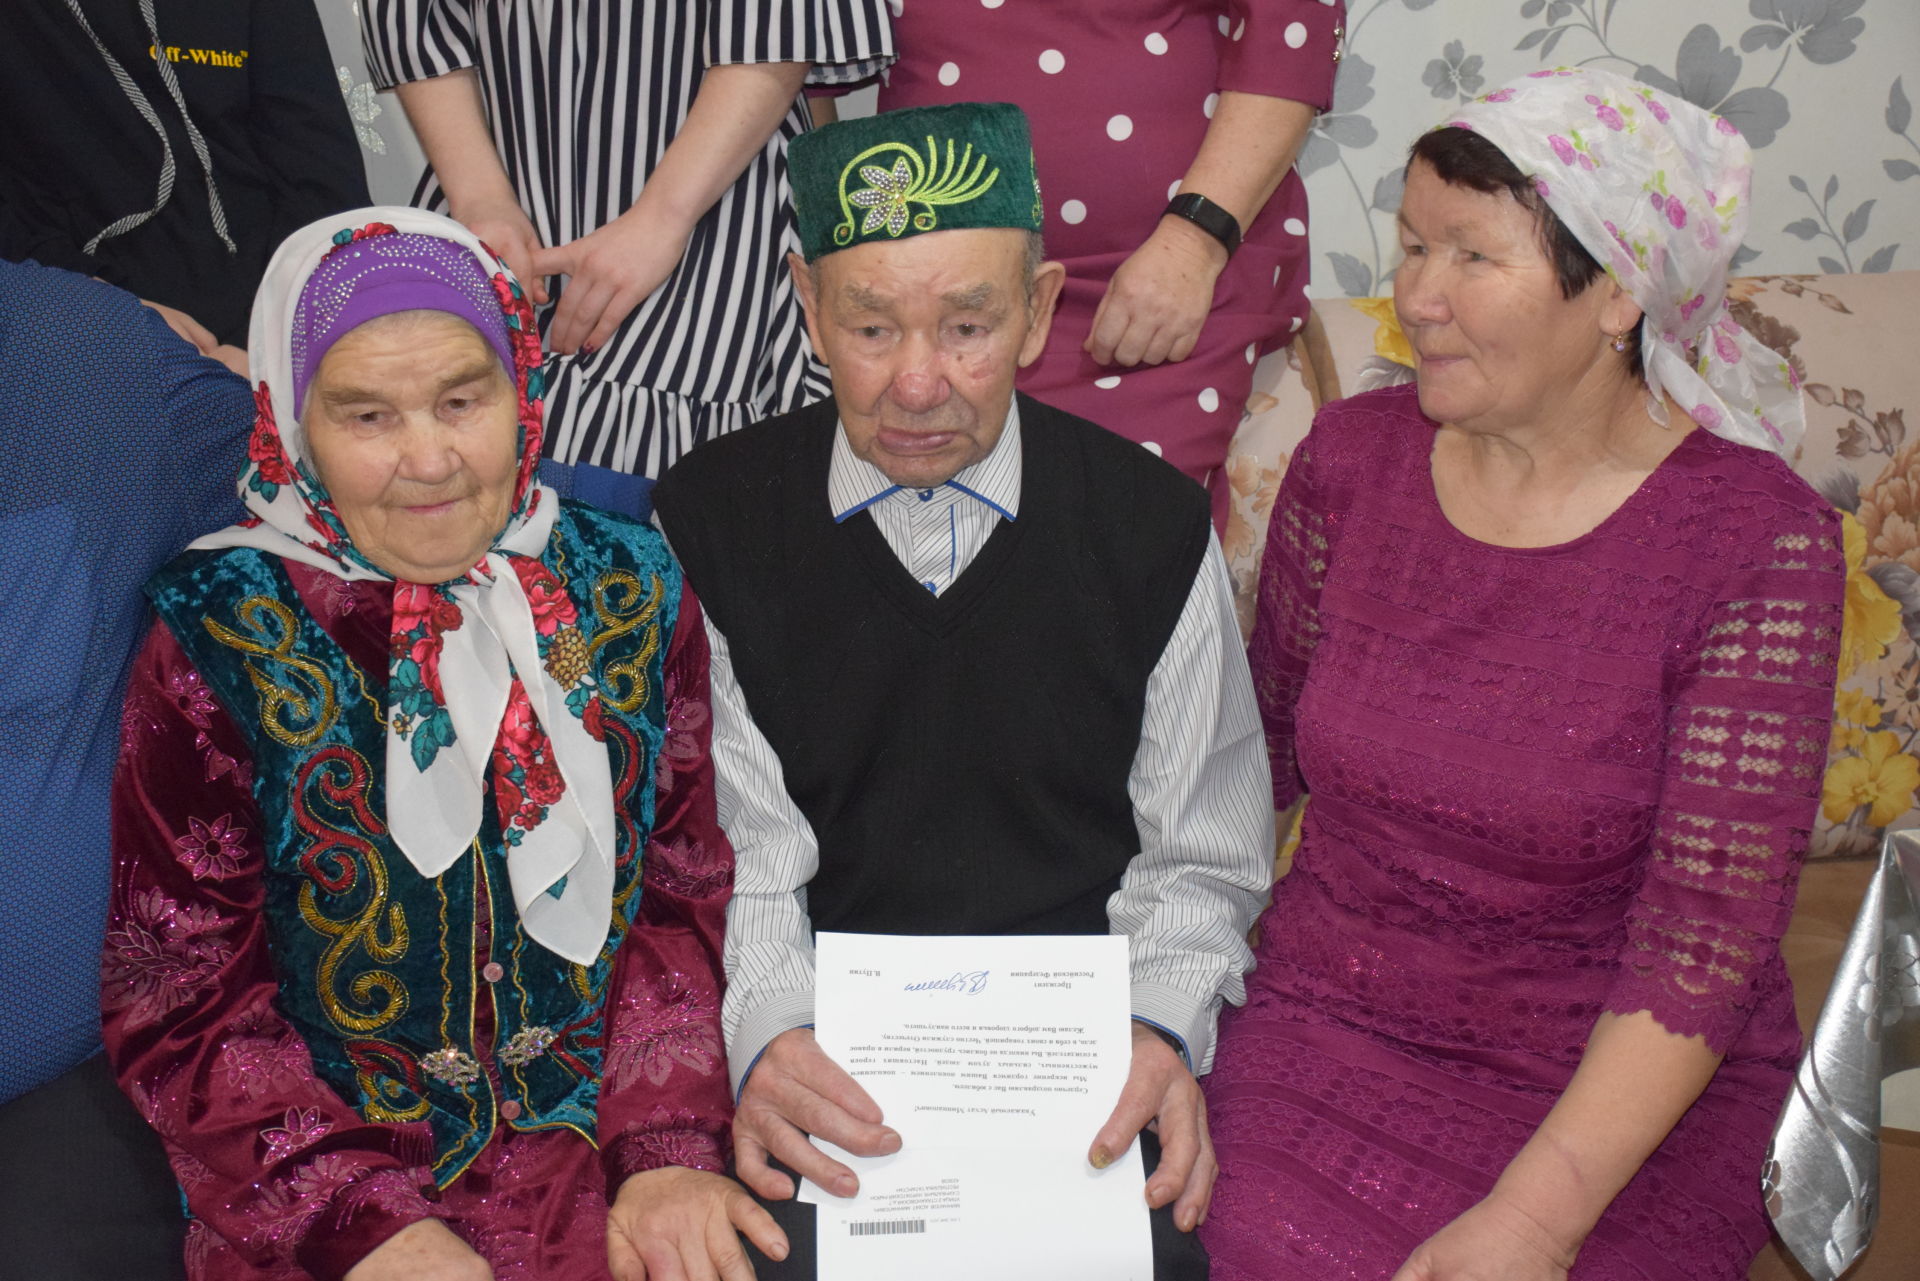 Труженик тыла из Кичкальни принимает поздравления с 90-летием